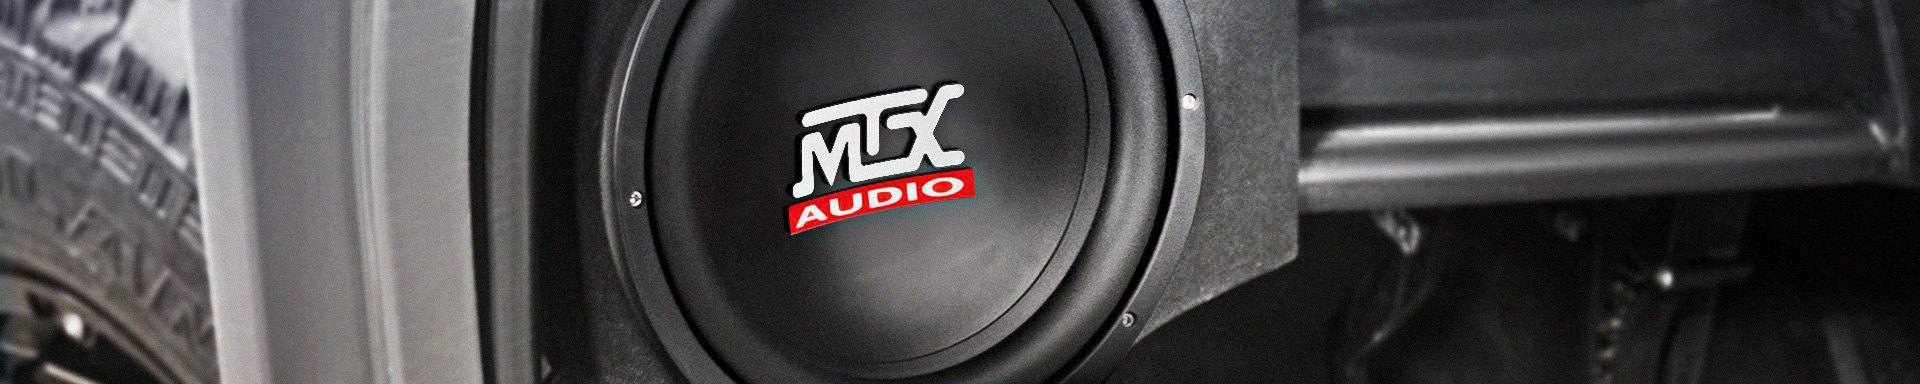 MTX Audio Installation Parts